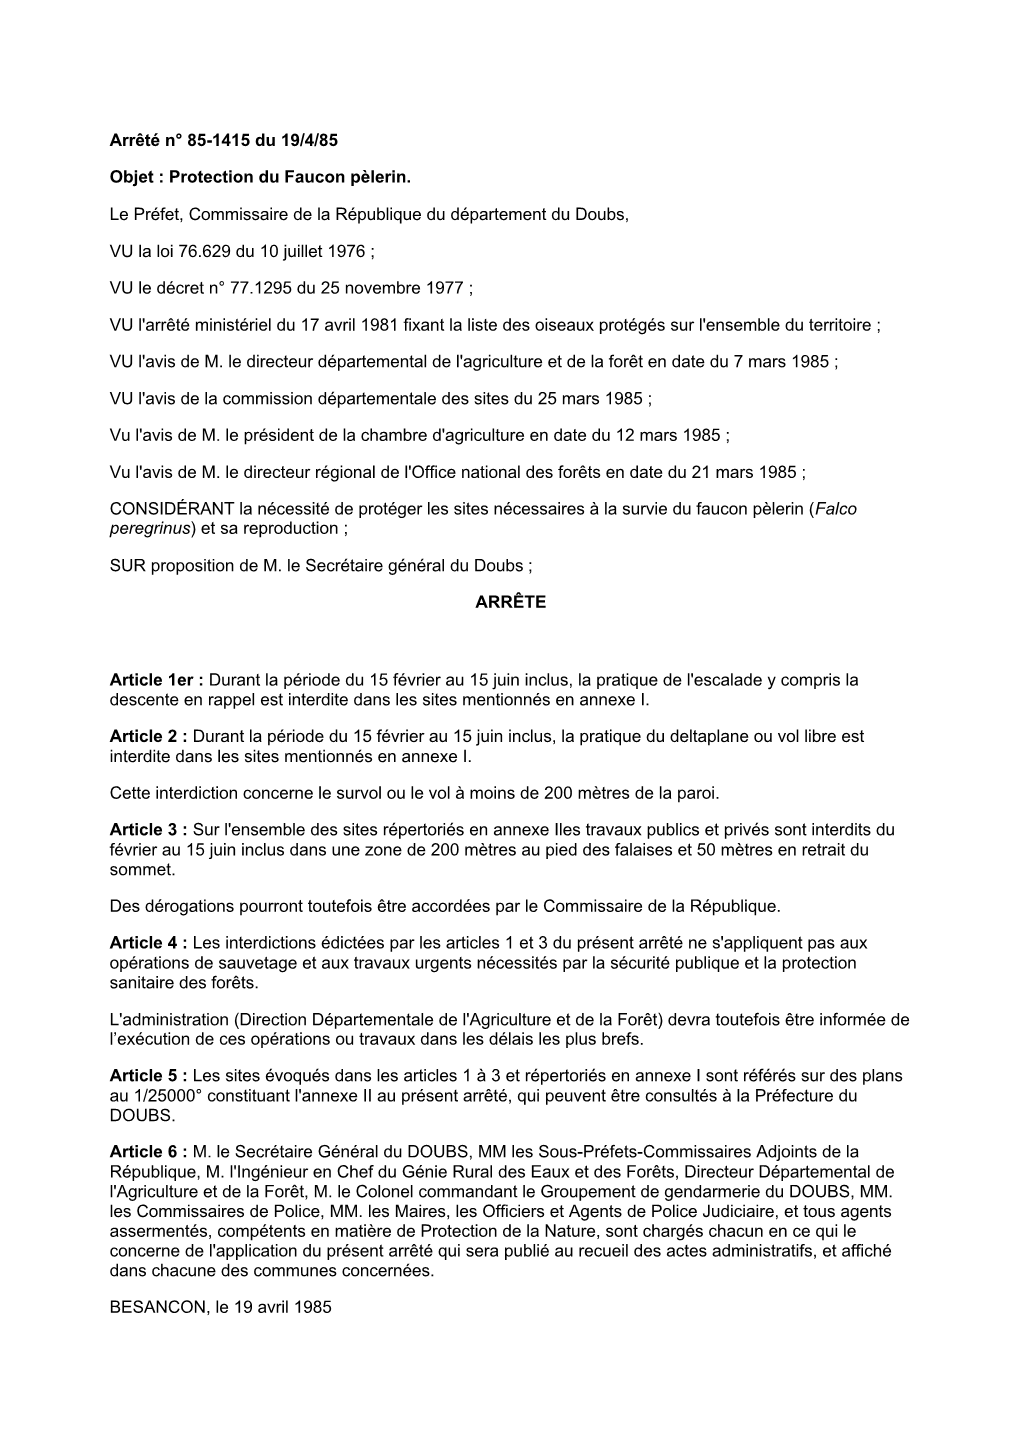 Arrêté N° 85-1415 Du 19/4/85 Objet : Protection Du Faucon Pèlerin. Le Préfet, Commissaire De La République Du Département